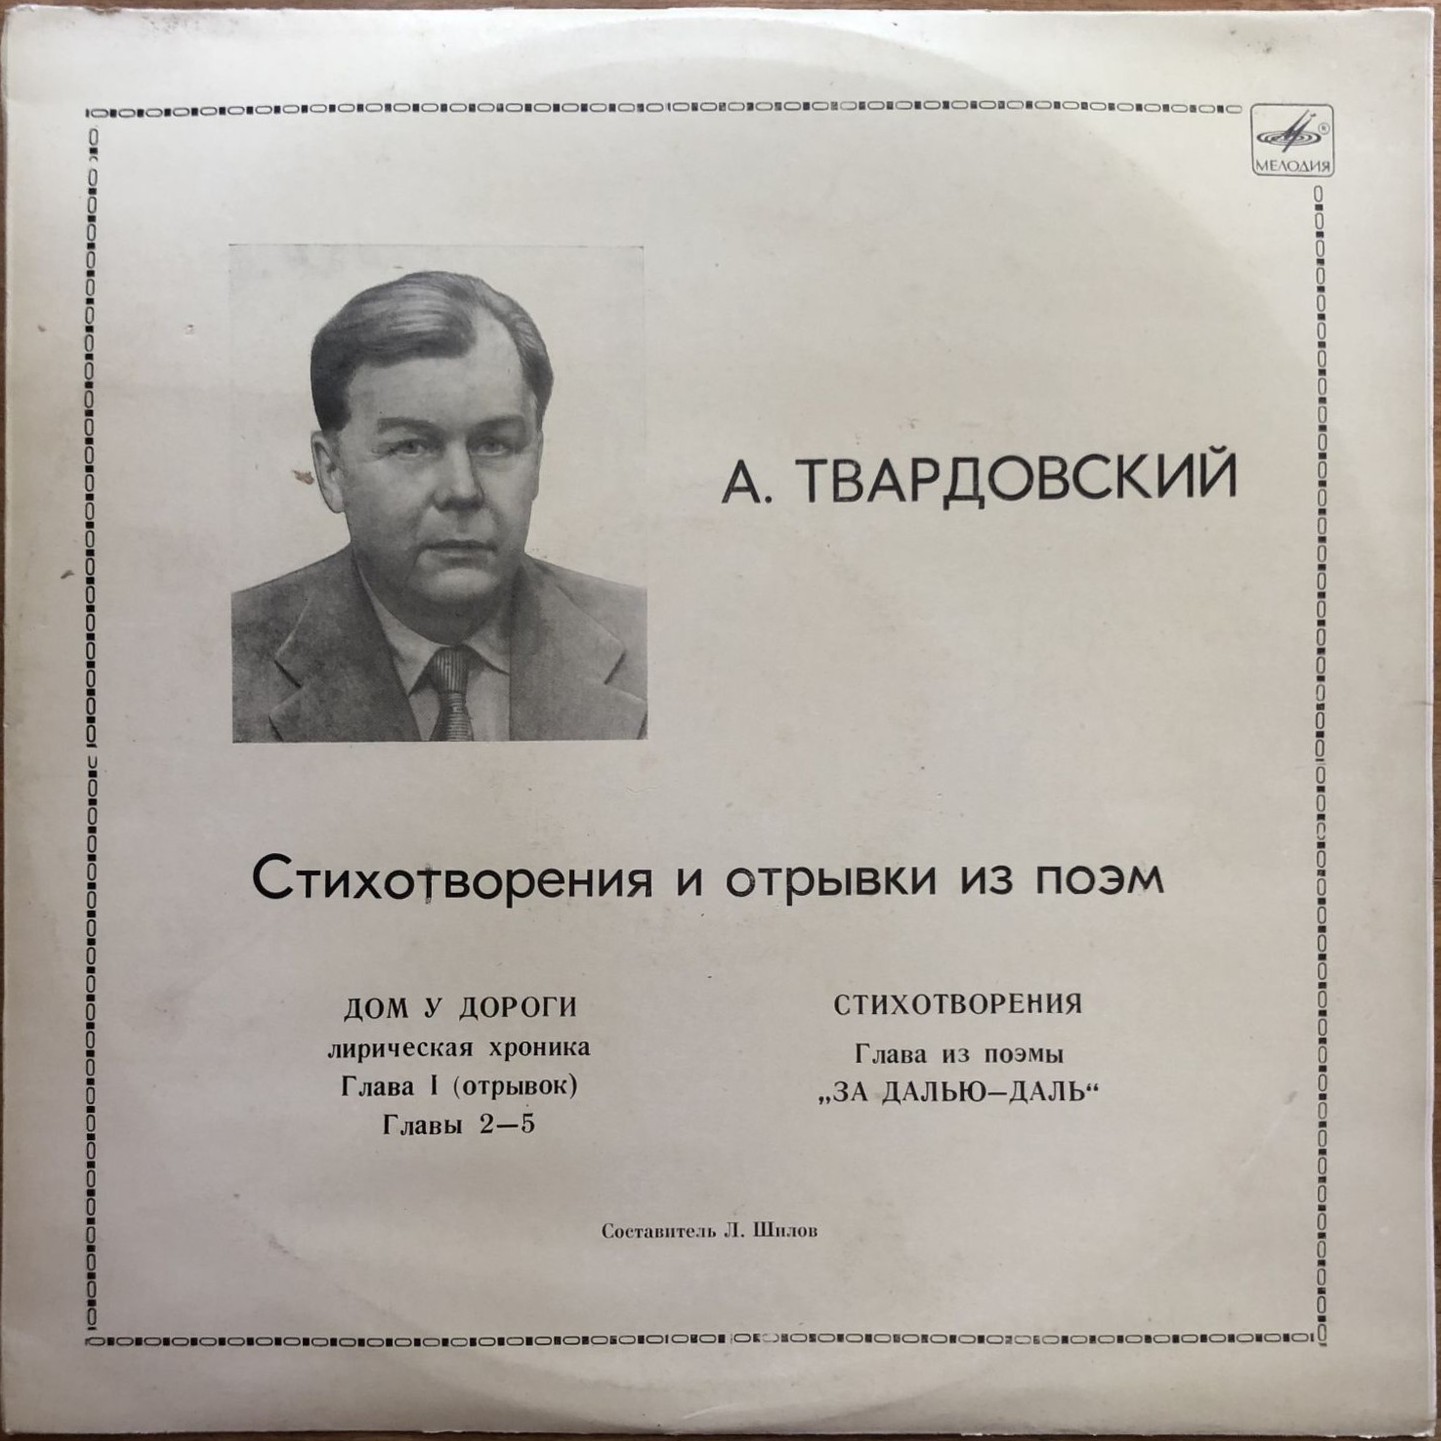 А. ТВАРДОВСКИЙ (1910-1971): Стихотворения и отрывки из поэм.